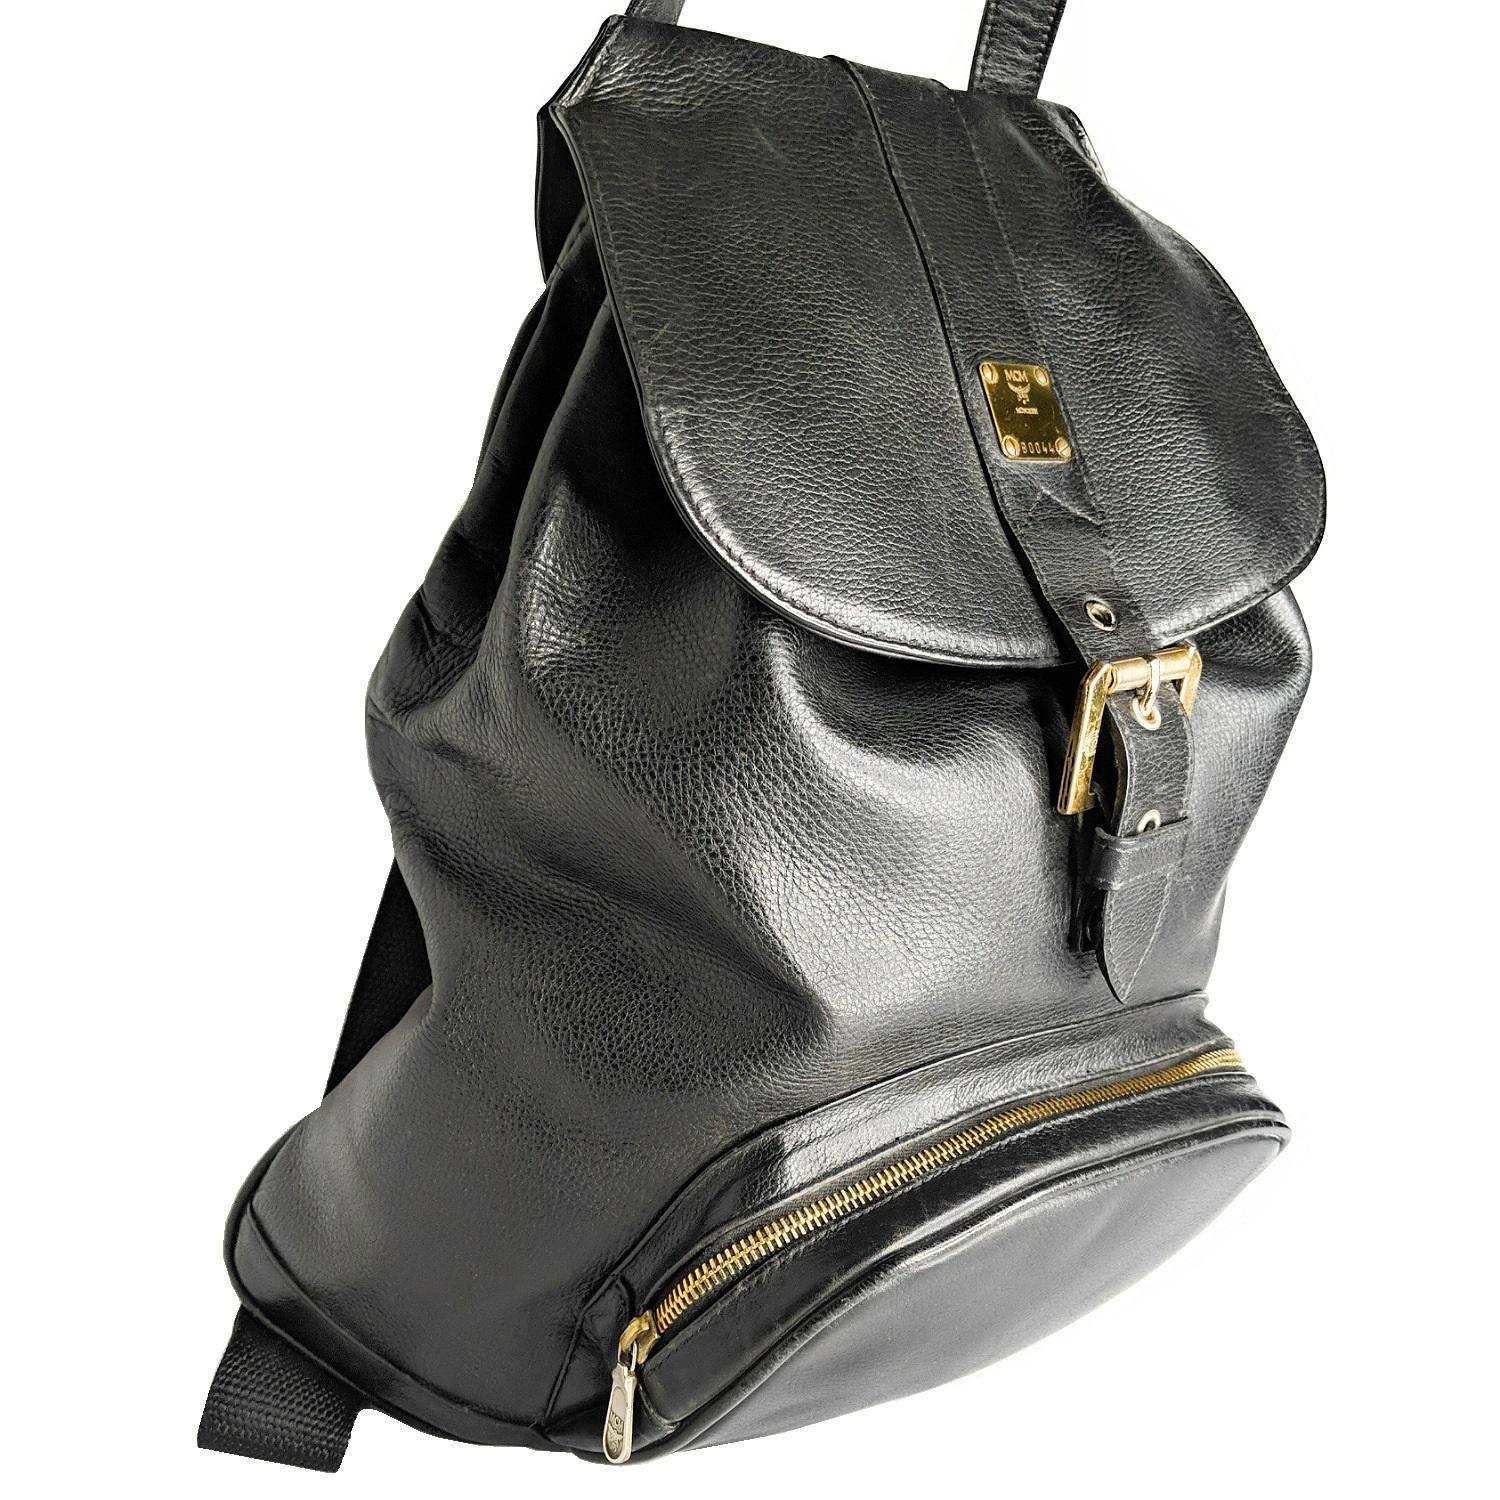 Voici le sac à dos vintage MCM en cuir véritable noir des années 80, usage unisexe pour toutes les générations. Si vous êtes à la recherche d'un sac MCM de l'époque, ce sac est un must-have ! Toujours dans l'optique du voyageur, ce sac à dos est le